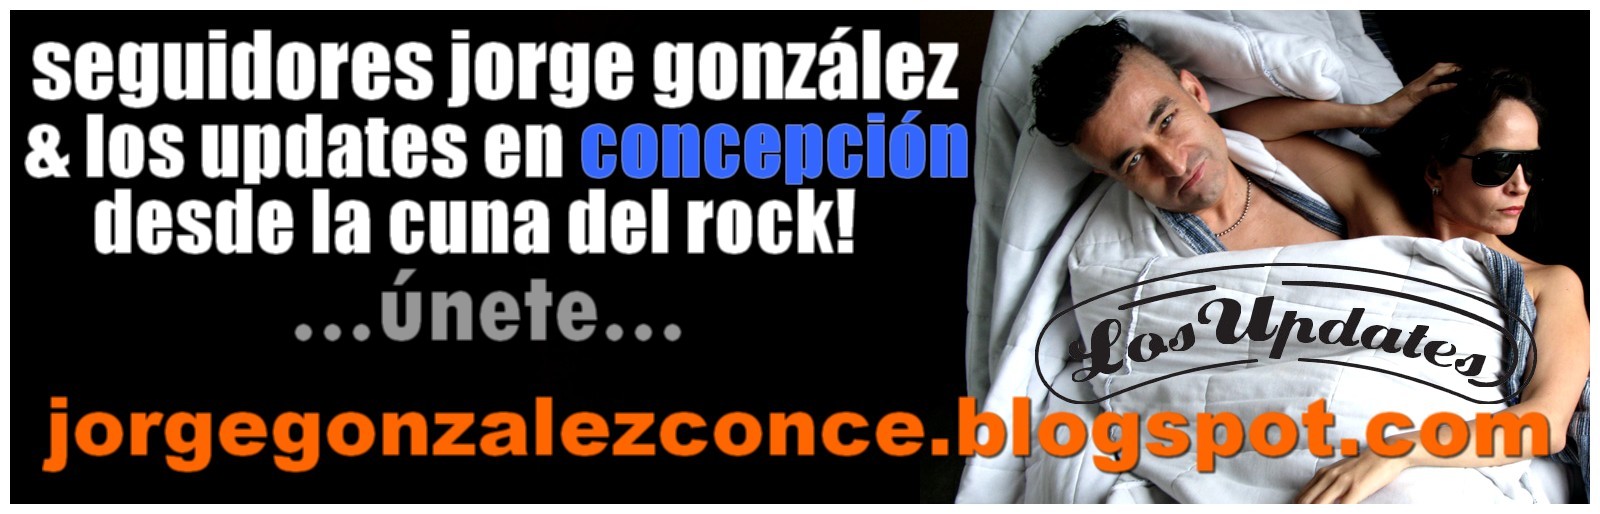 COMUNIDAD JORGE GONZALEZ CONCE